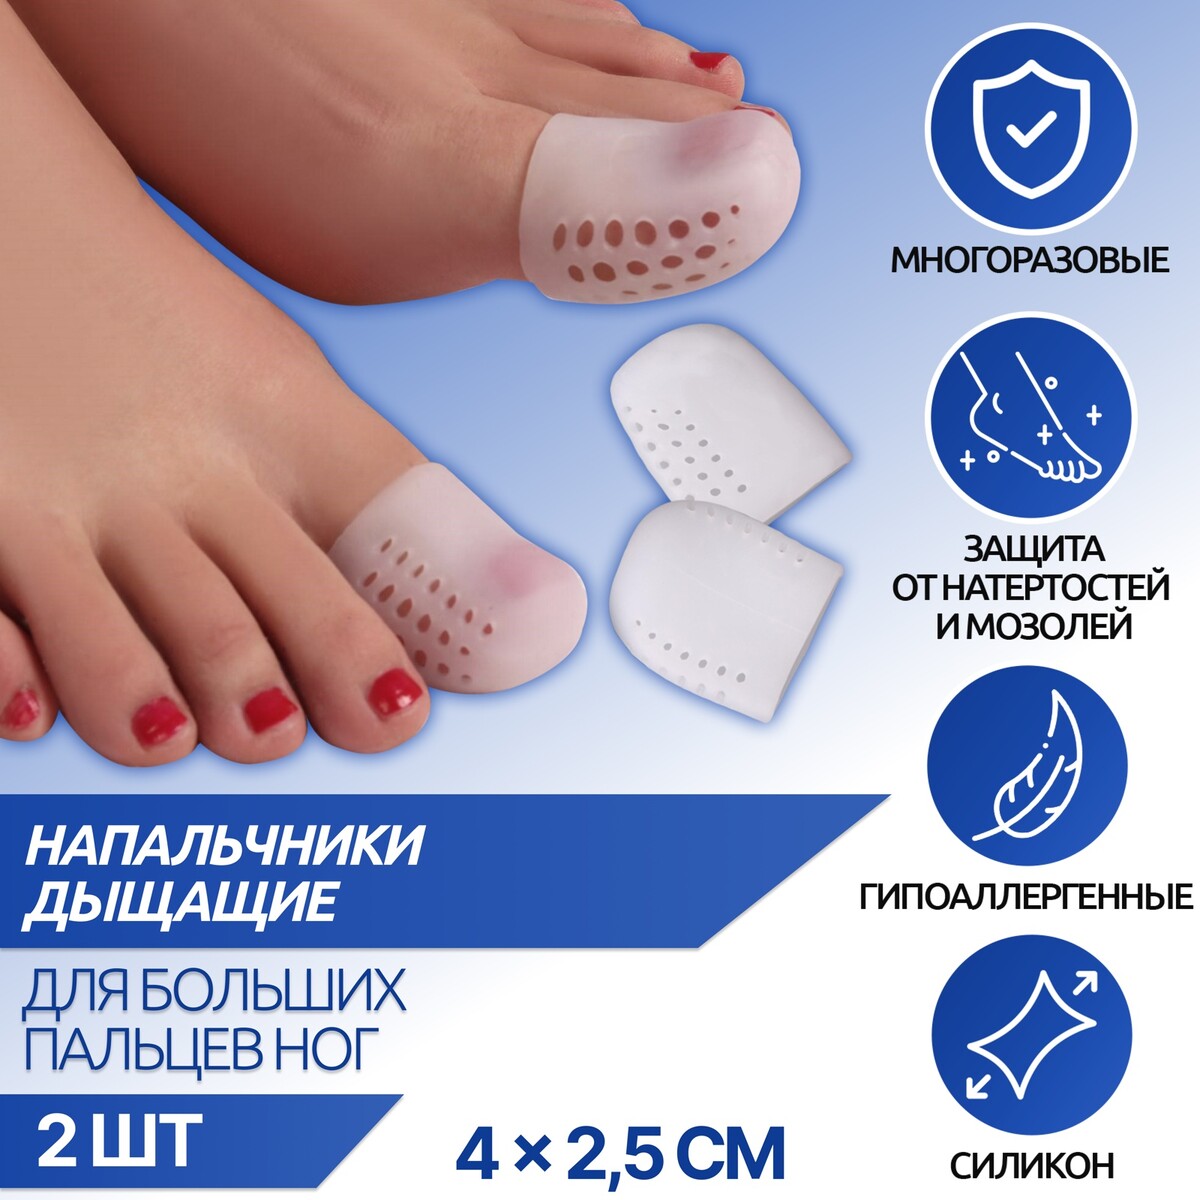 Напальчники для больших пальцев ног, дышащий, силиконовые, 4 × 2,5 см, пара, цвет белый напальчник для больших пальцев ног силиконовый 3 5 × 3 5 × 1 5 см пара белый